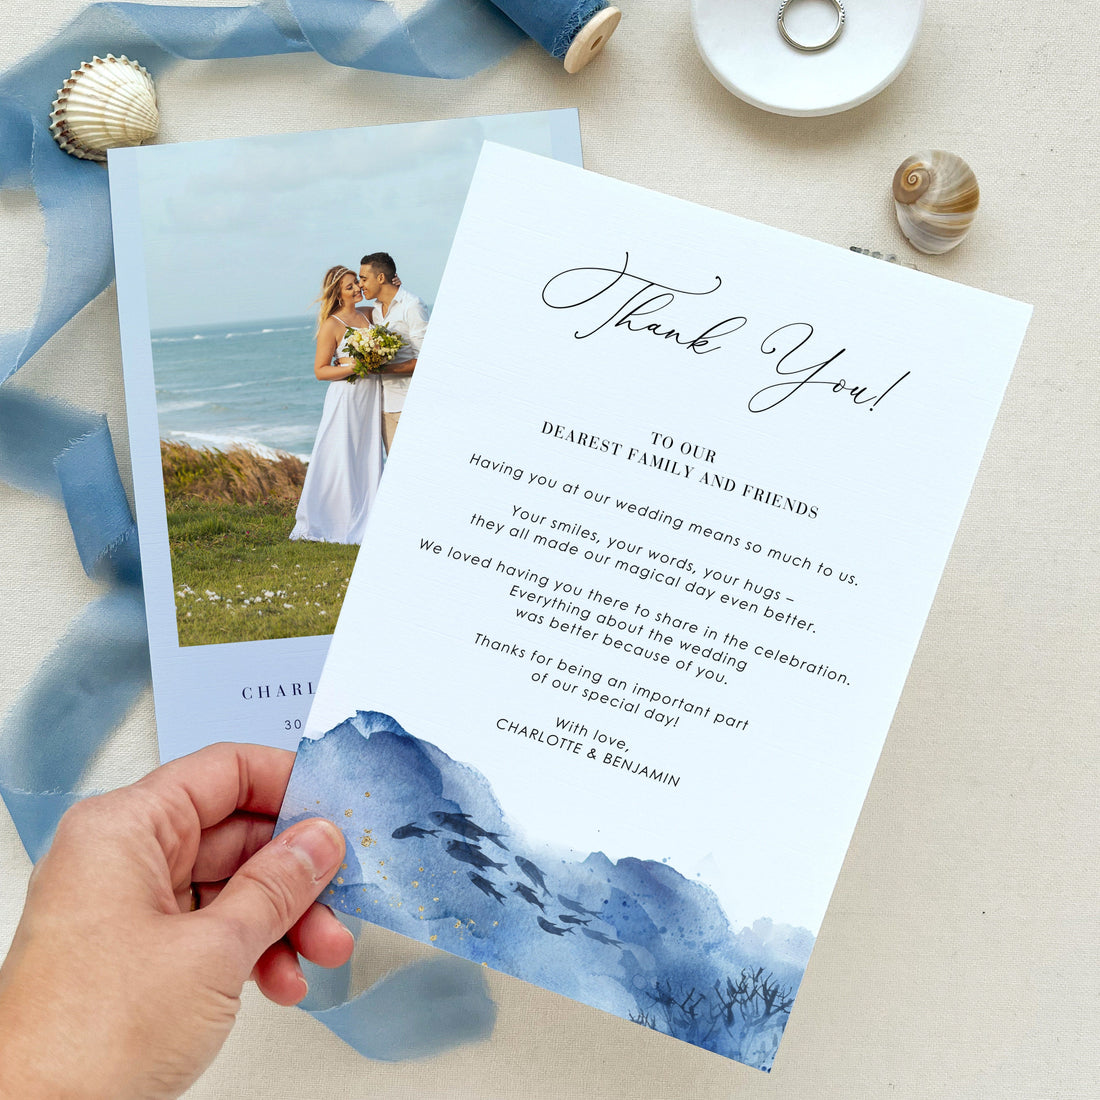 YLENIA Ocean Wedding Thank You Card with Photo